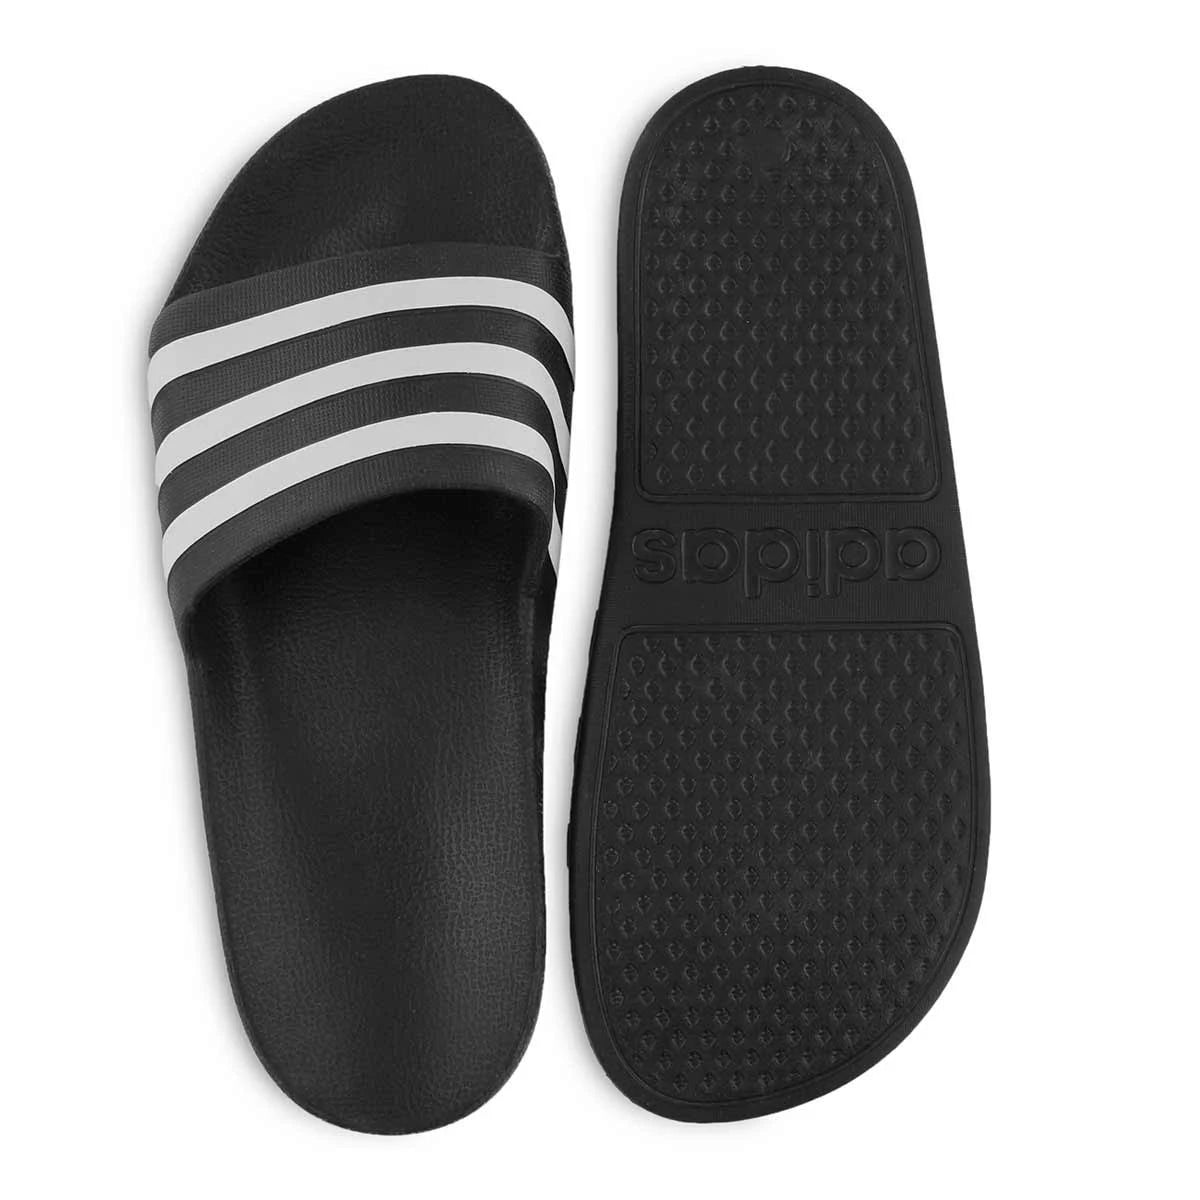 Classic Black and White Adidas Slides- Large Sizes!